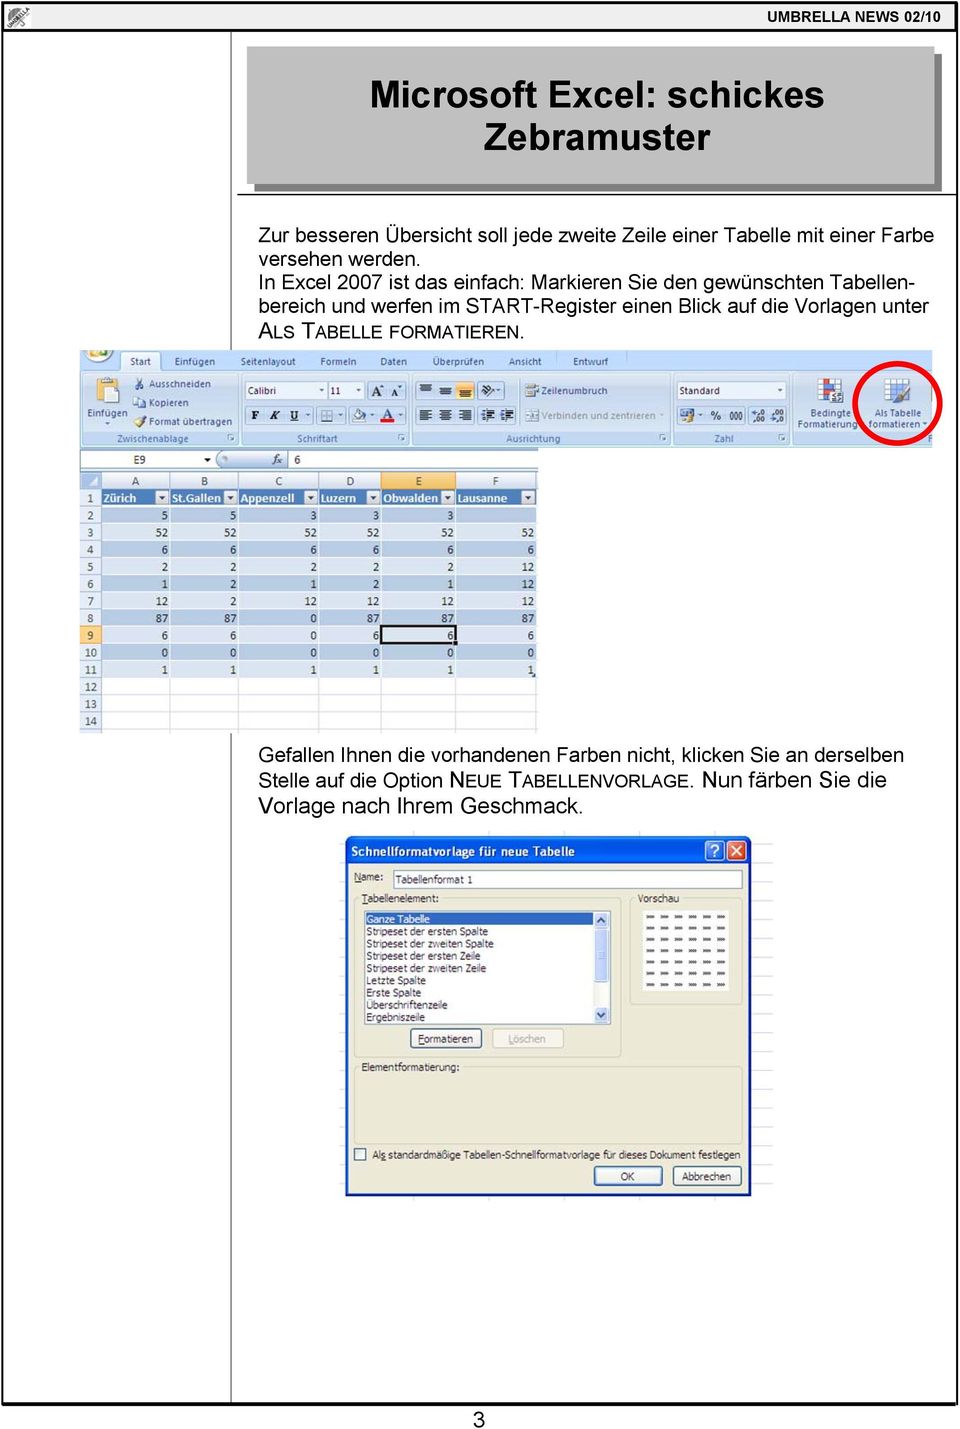 In Excel 2007 ist das einfach: Markieren Sie den gewünschten Tabellenbereich und werfen im START-Register einen